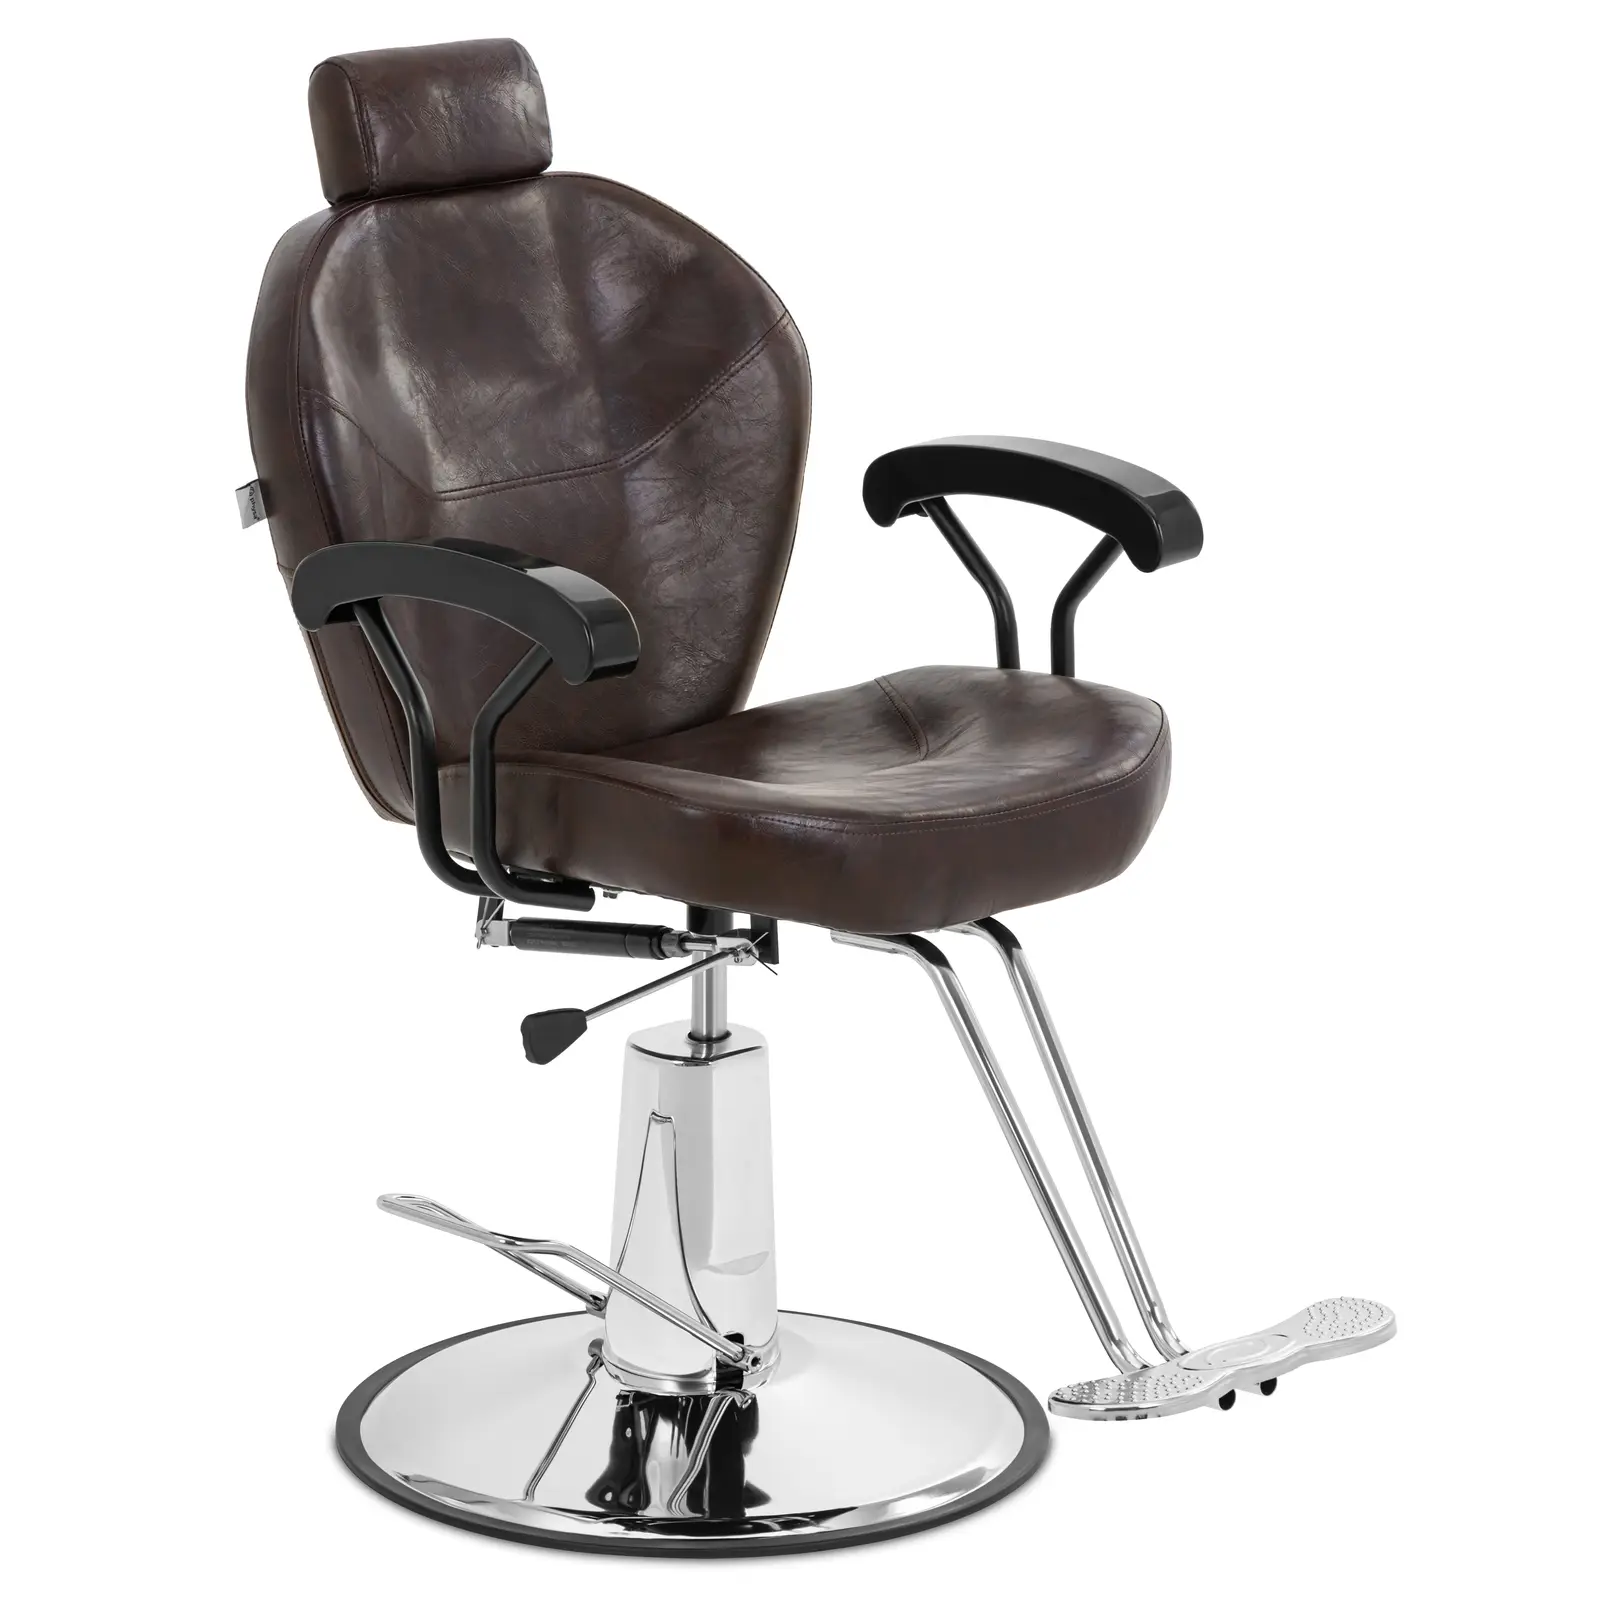 Fotel fryzjerski Ilford z zagłówkiem i podnóżkiem - 52 - 64 cm - 150 kg - brązowy